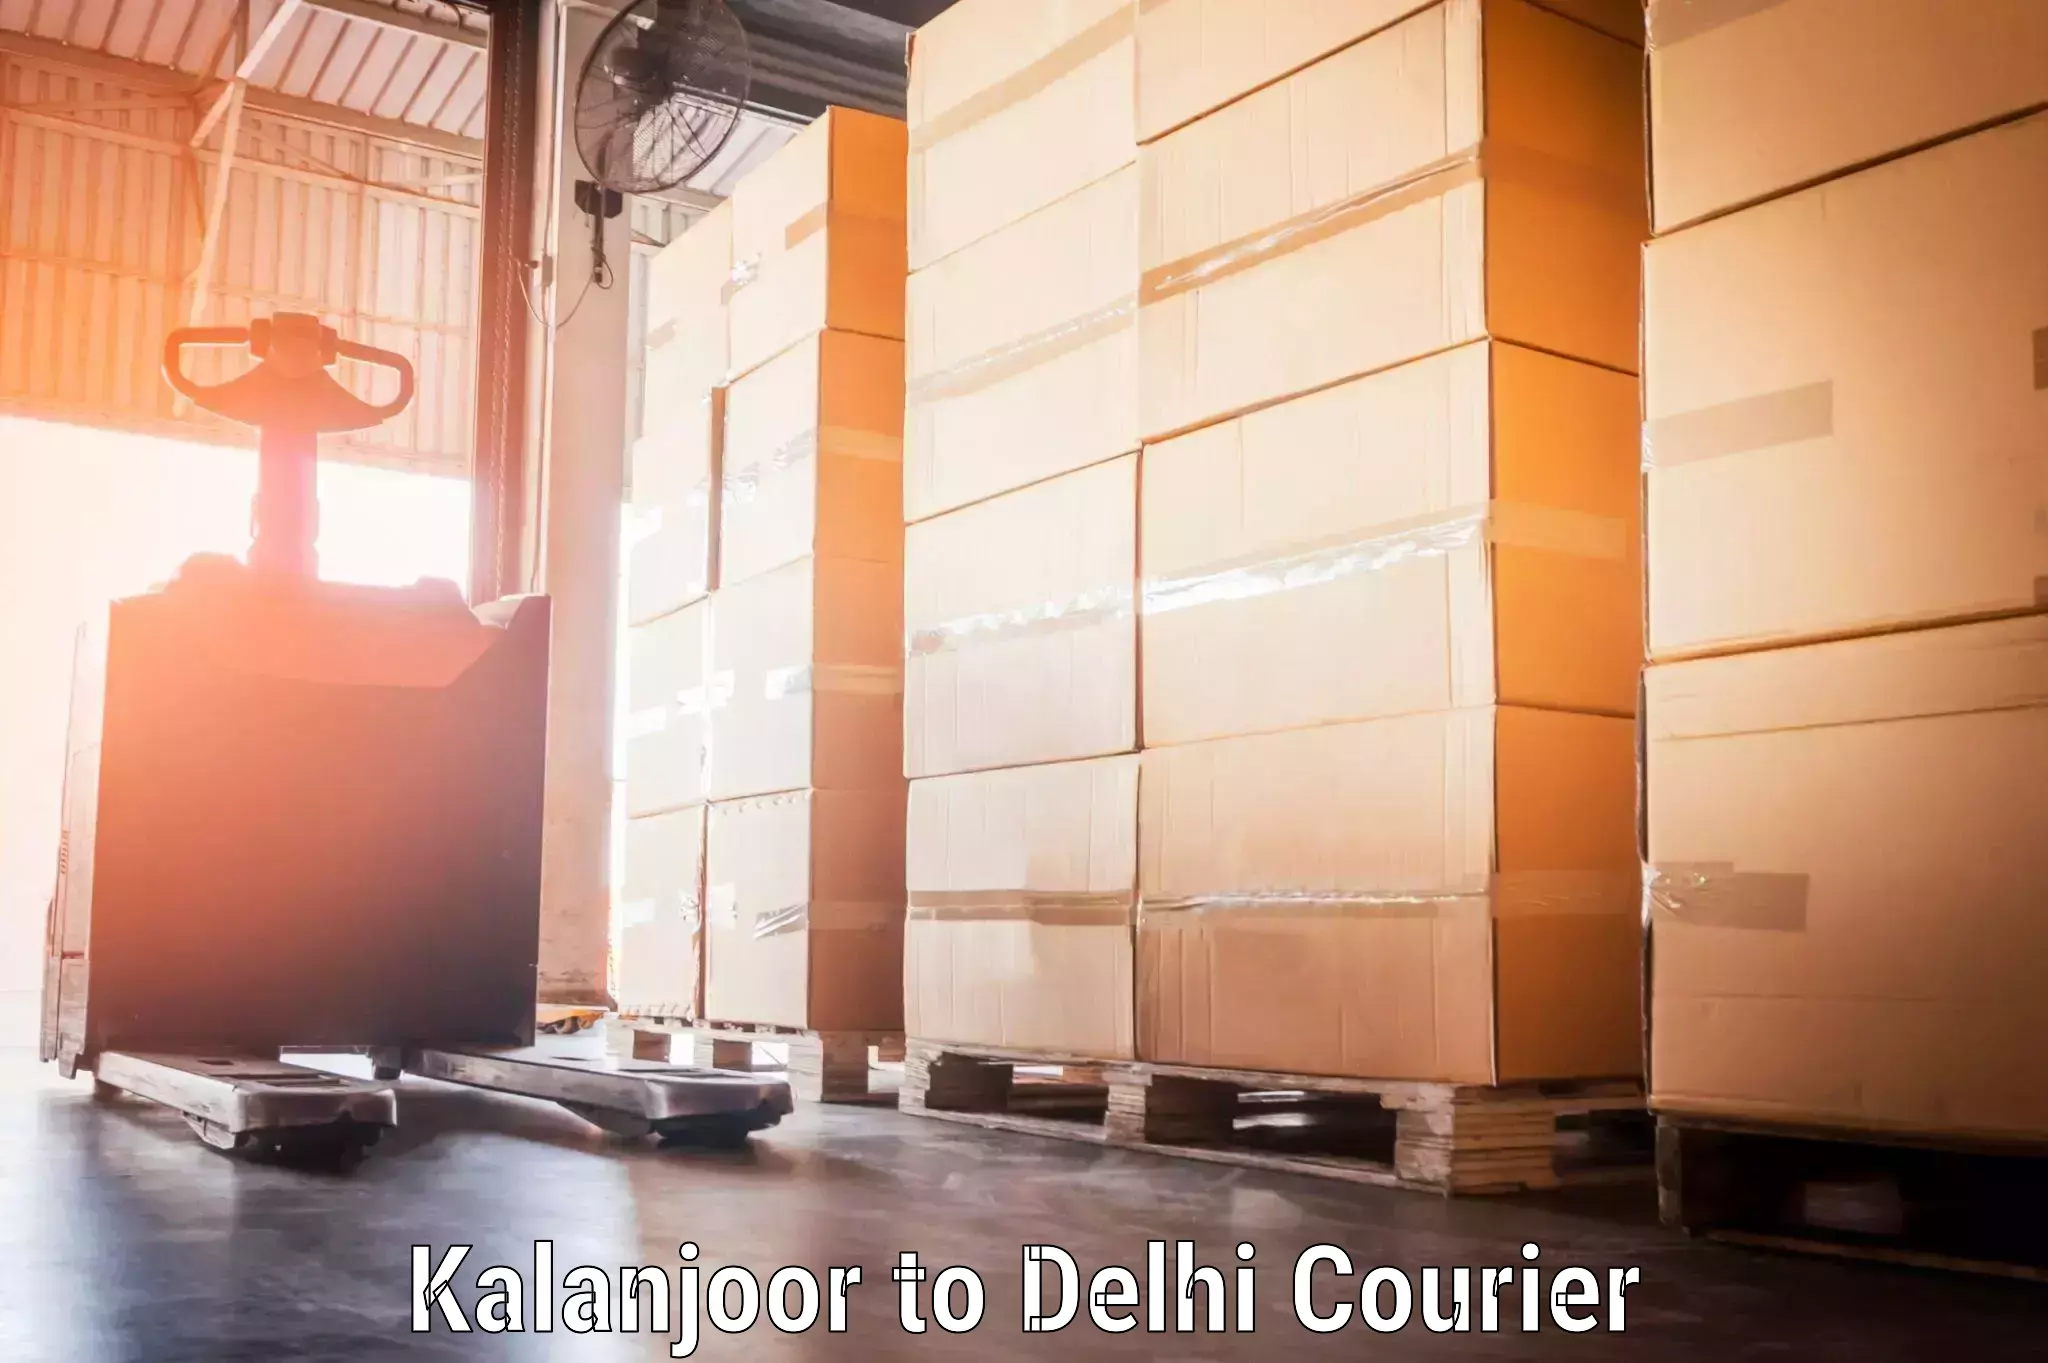 Door-to-door baggage service Kalanjoor to Delhi